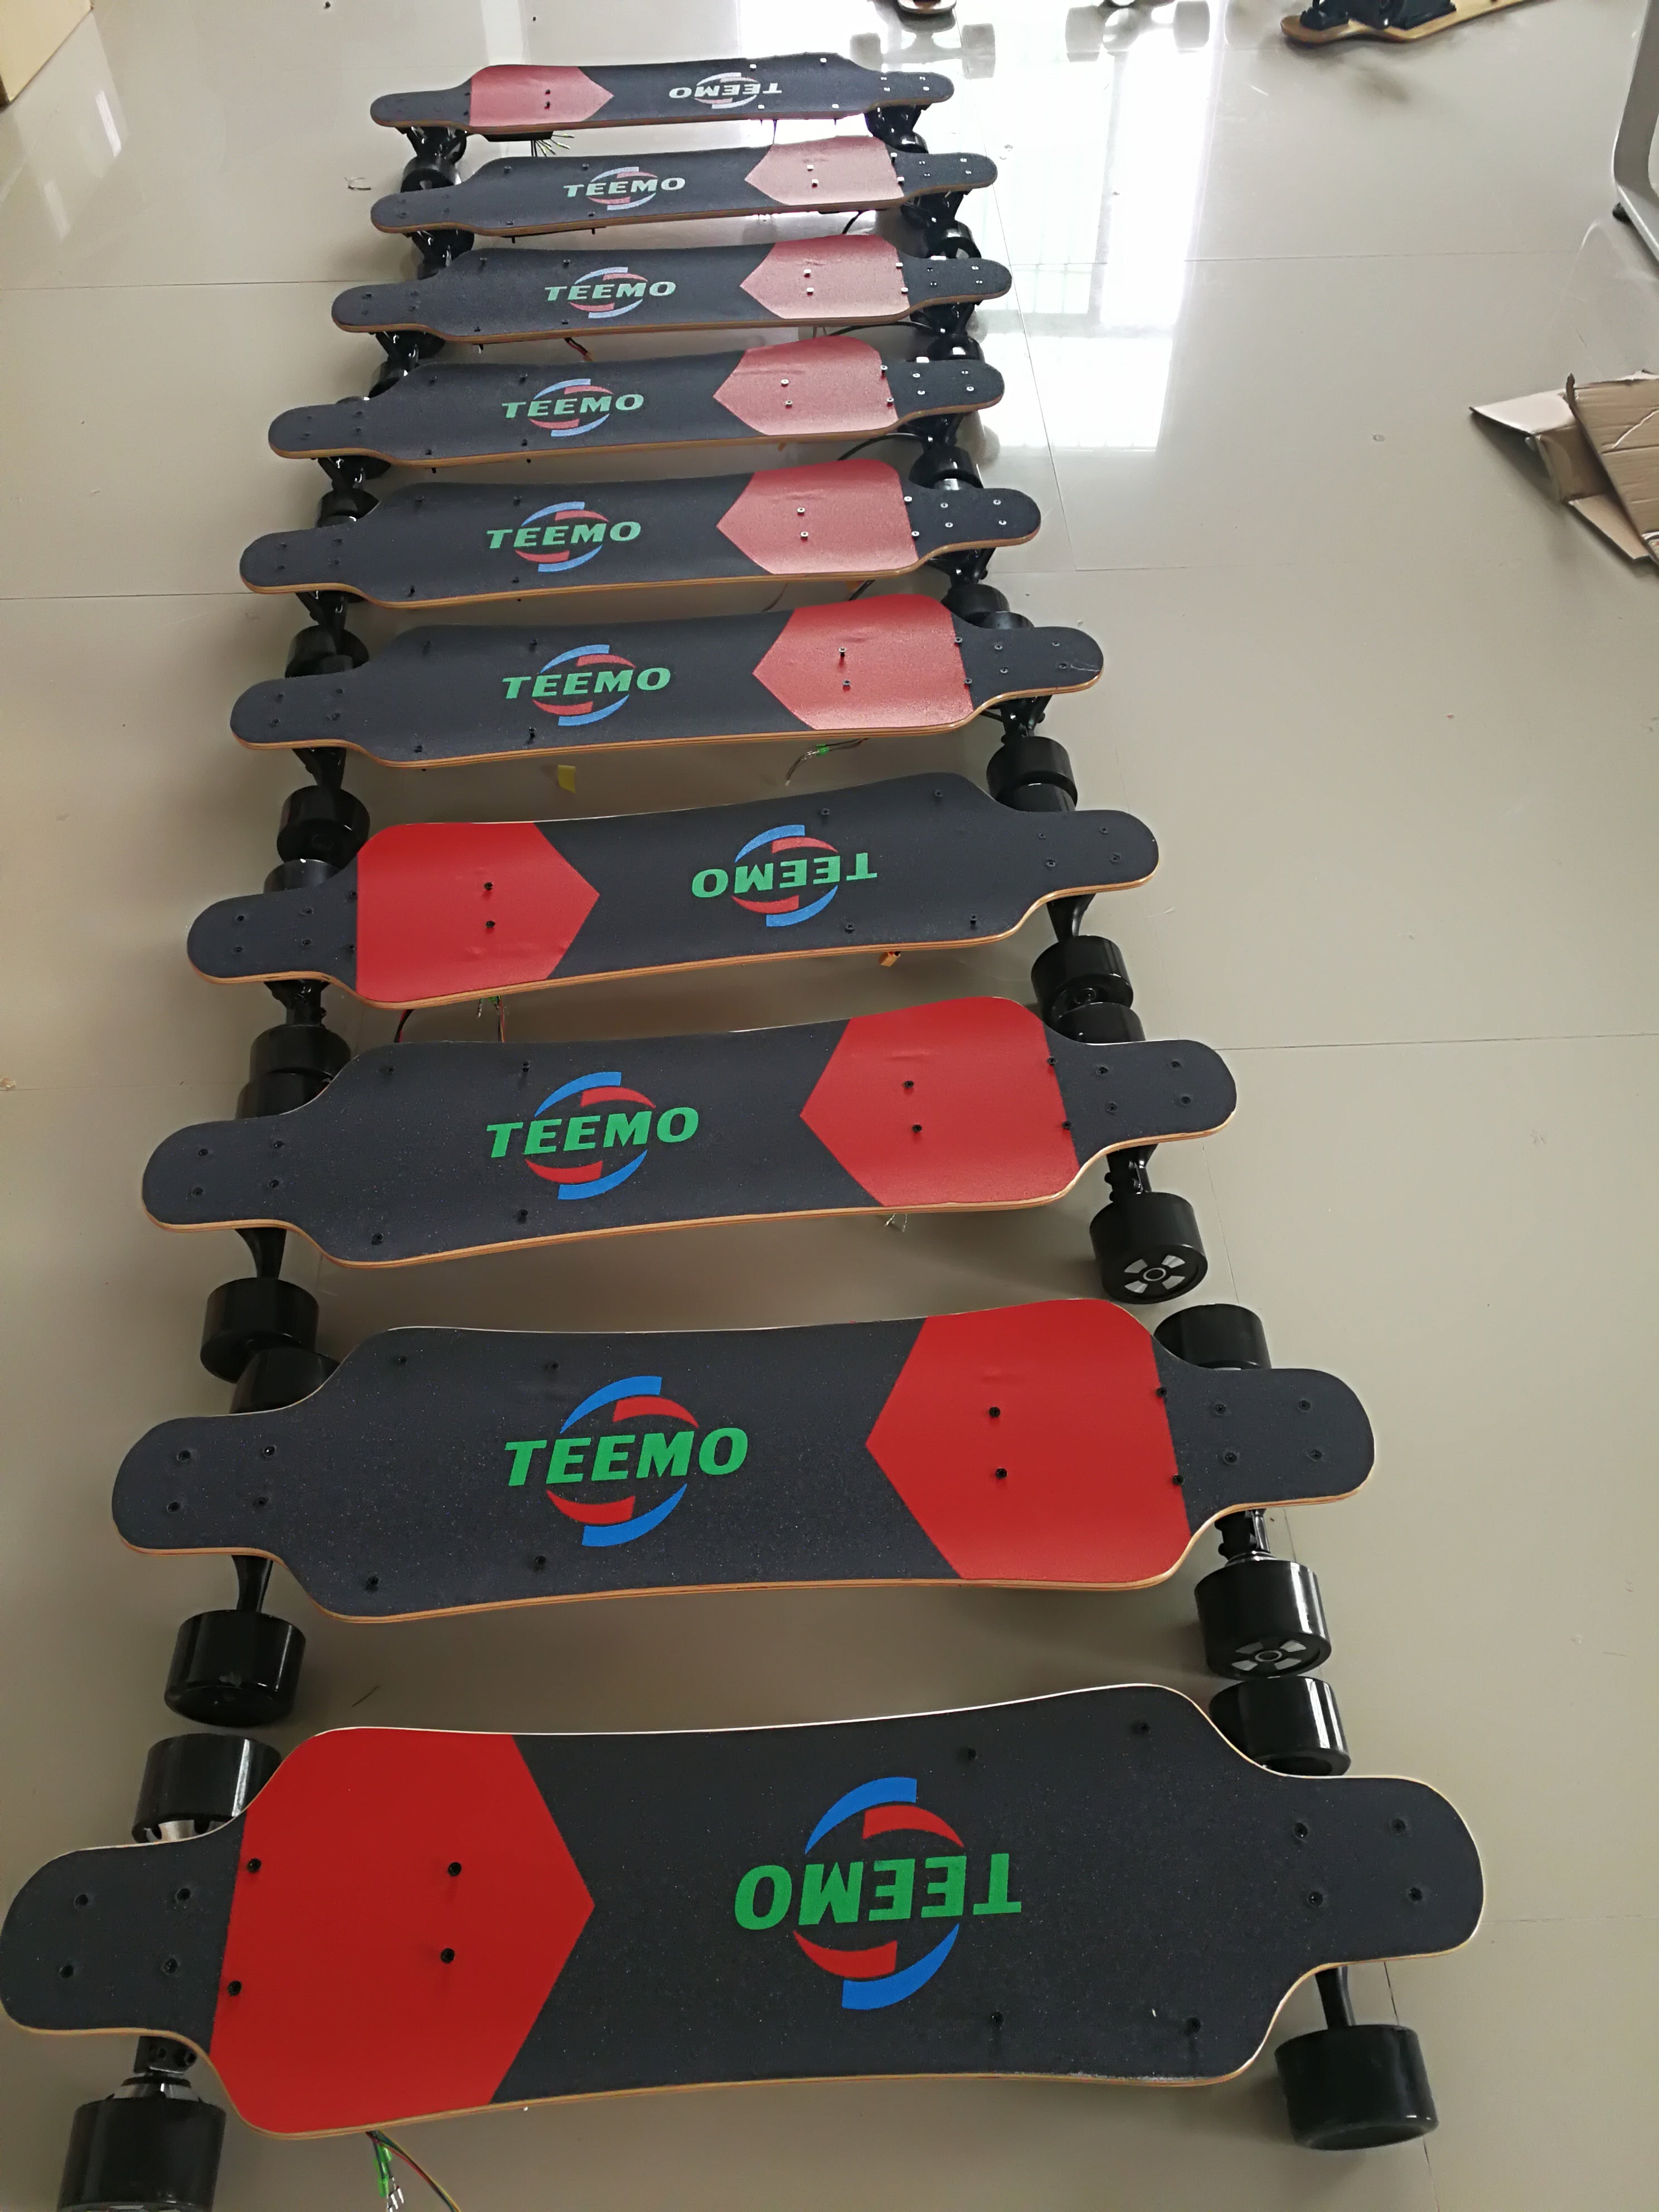 EEMO BOARD long board electric skateboard assembly process